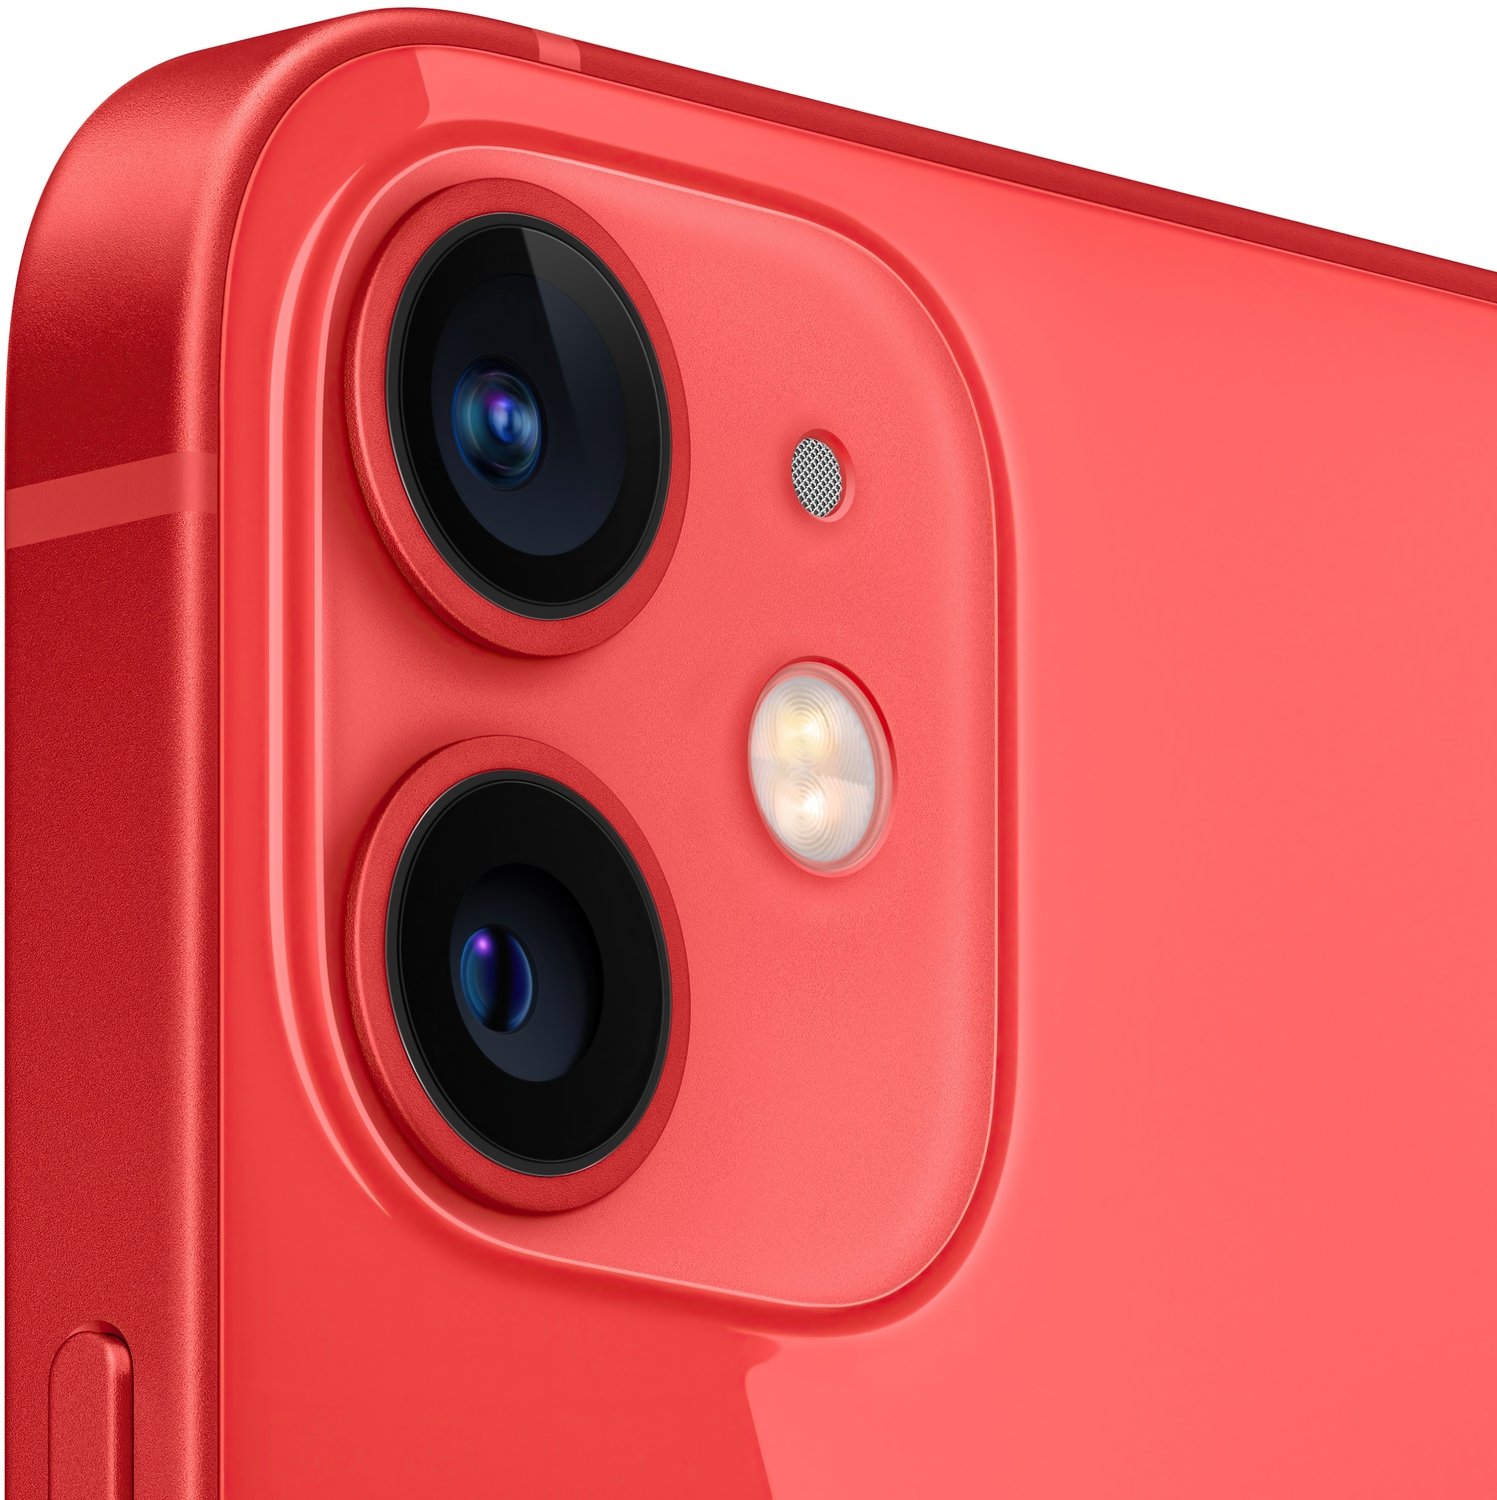  Смартфон Apple iPhone 12 mini 128GB (PRODUCT) RED (MGE53) фото